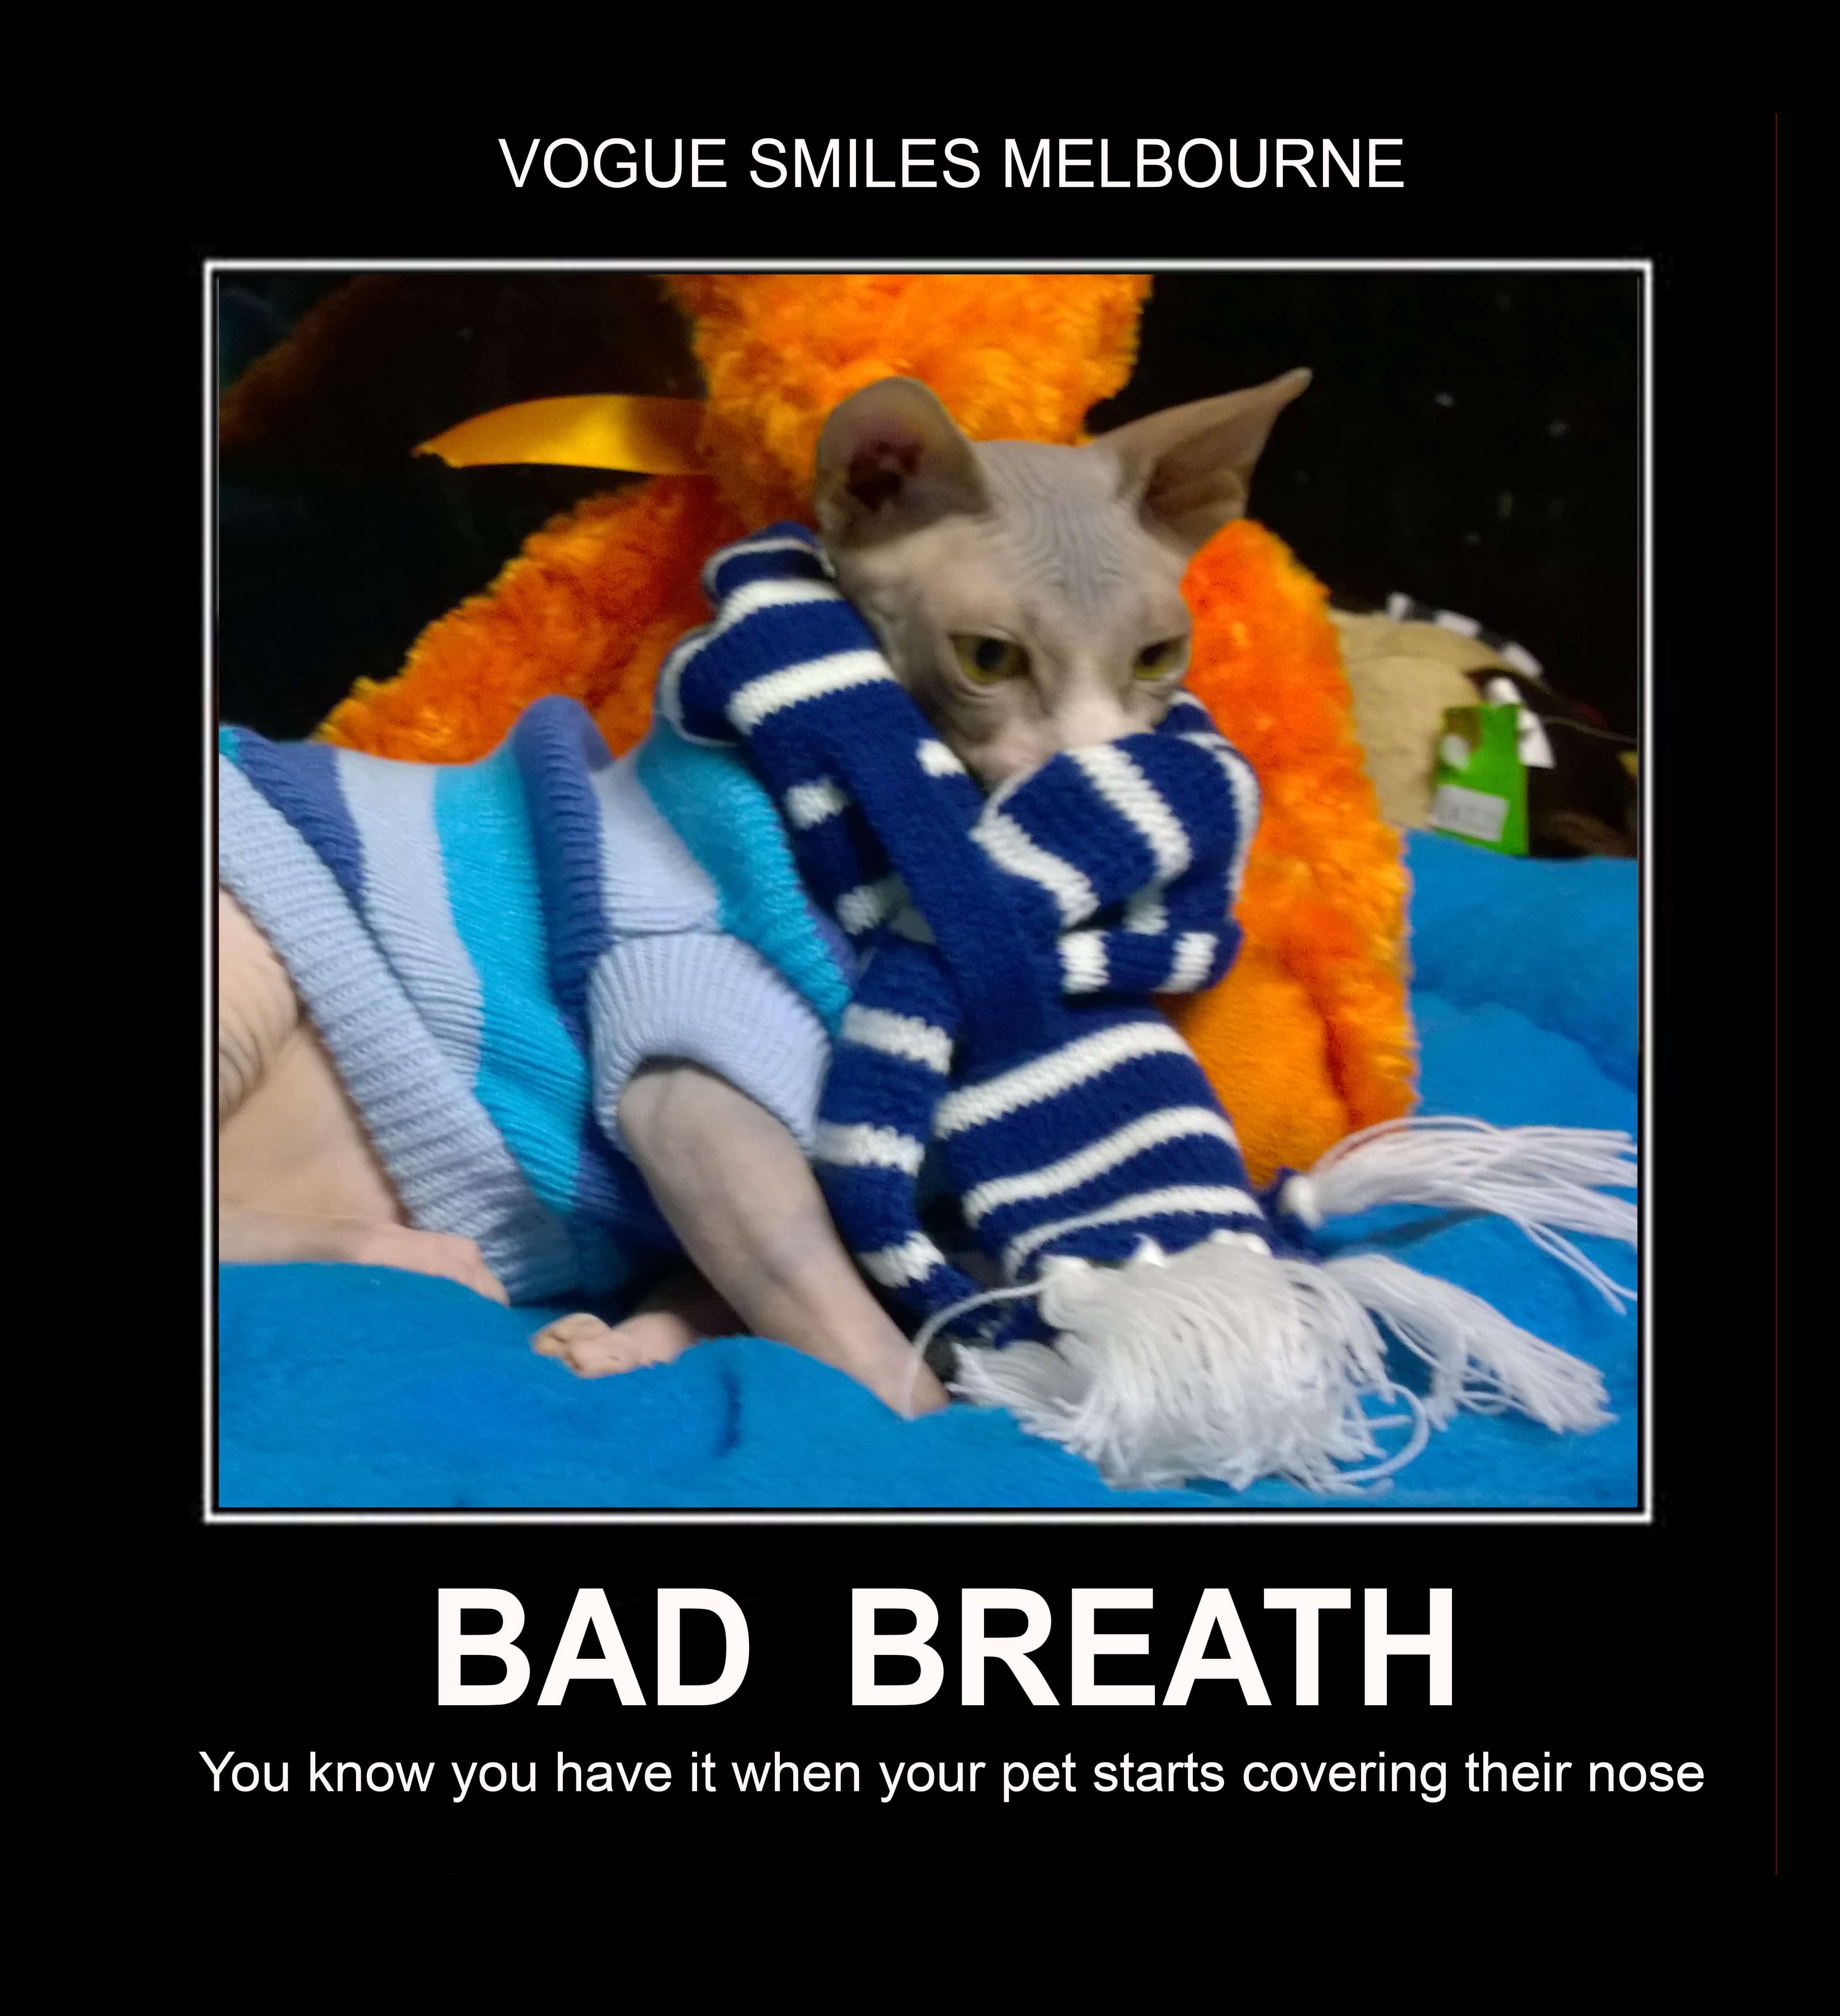 Bad Breath Treatment in Melbourne CBD